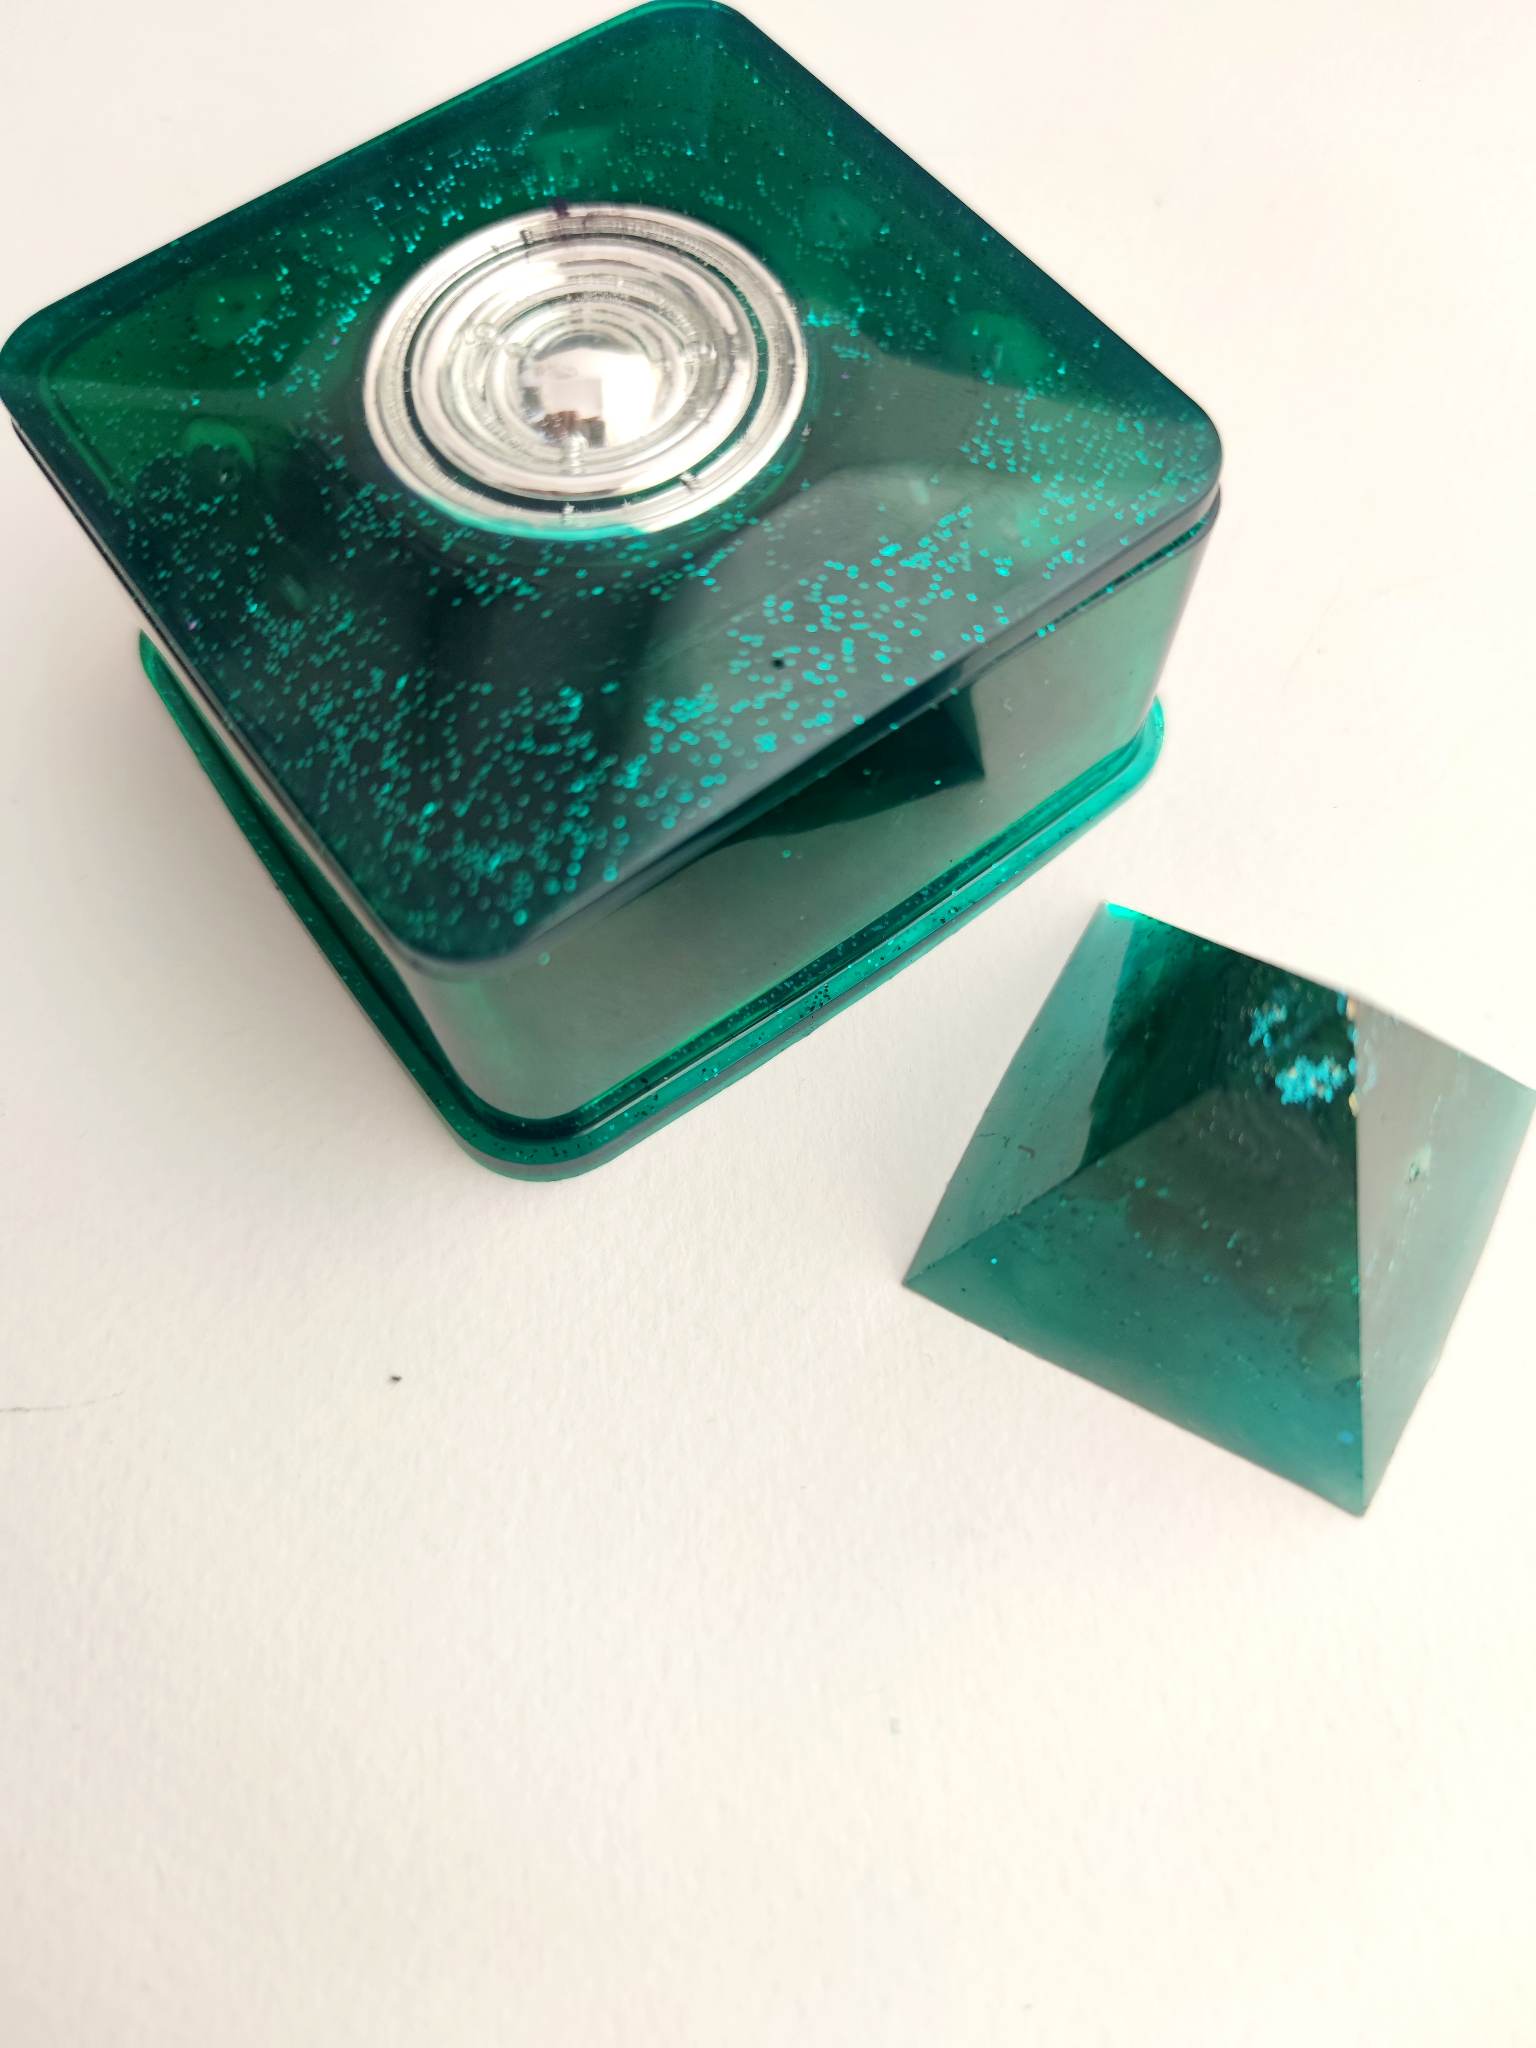 Cutie de orgonit pentru depozitarea pietrelor semiprețioase, rune și bijuterii magice - Magie verde